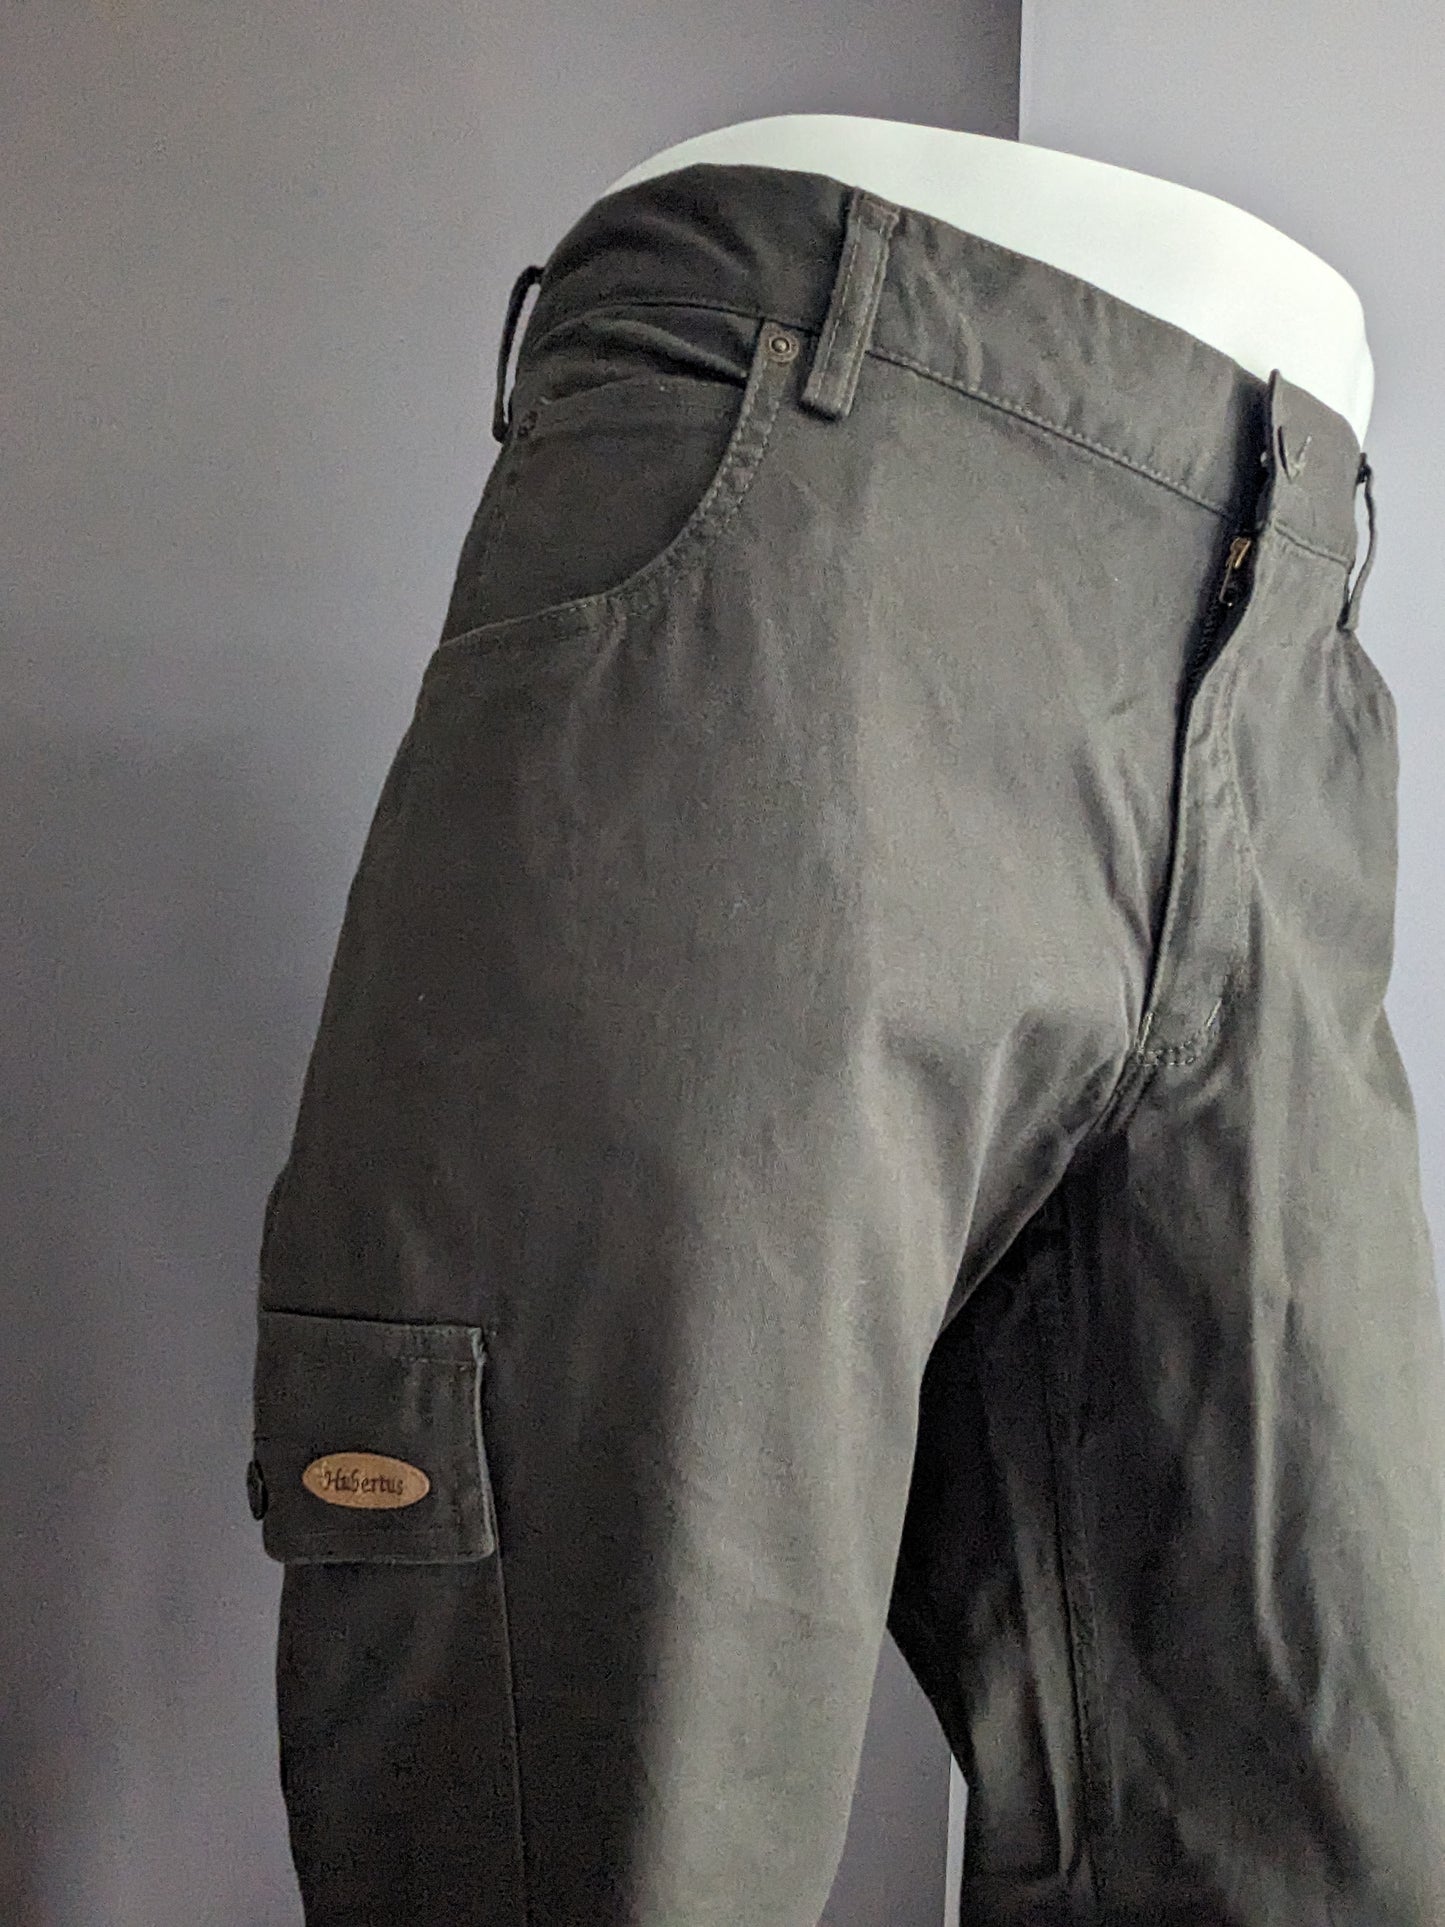 Hubertus Hunting broek met zak zijkant. Donker Groen gekleurd. Maat 29 (58 / XL-2XL)